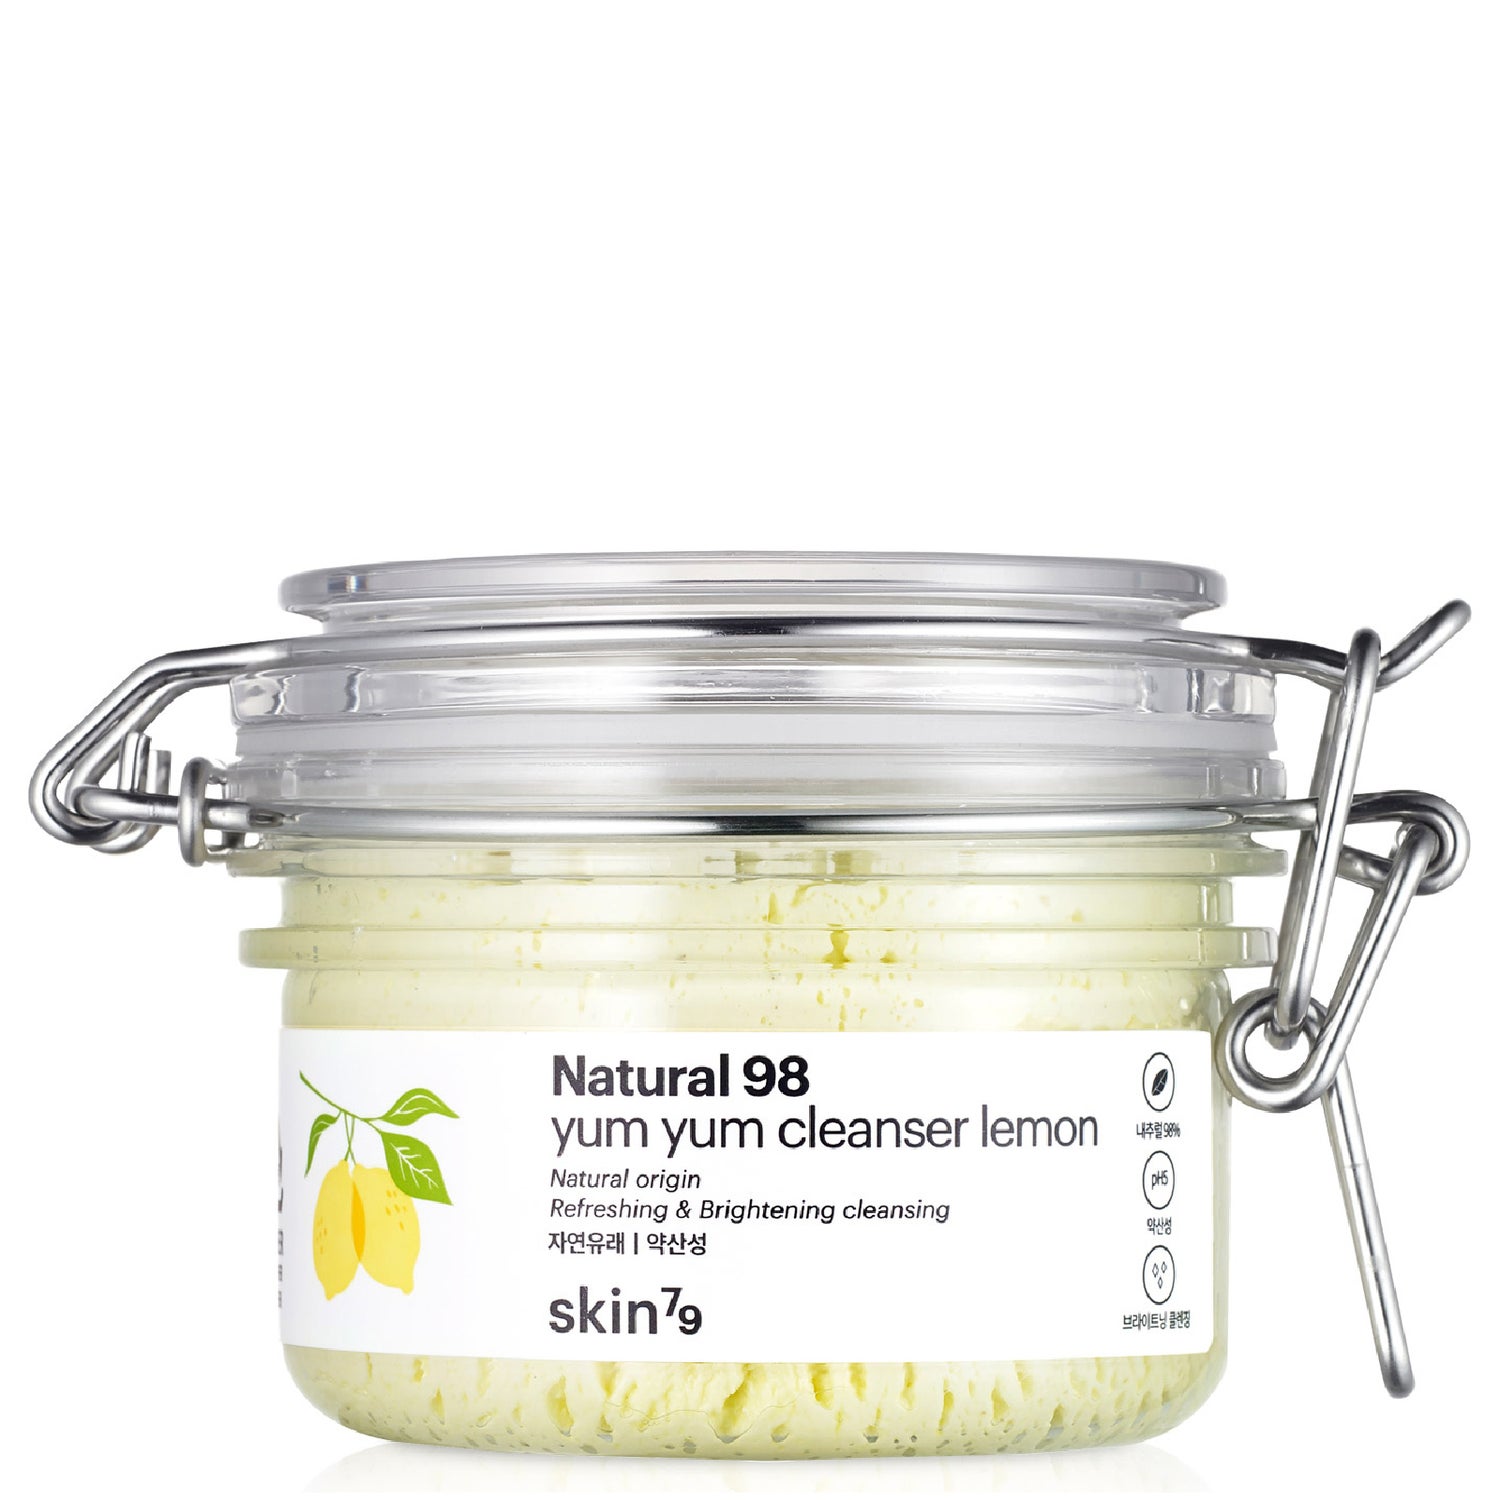 Skin79 Yum Yum Cleanser 100g - Lemon